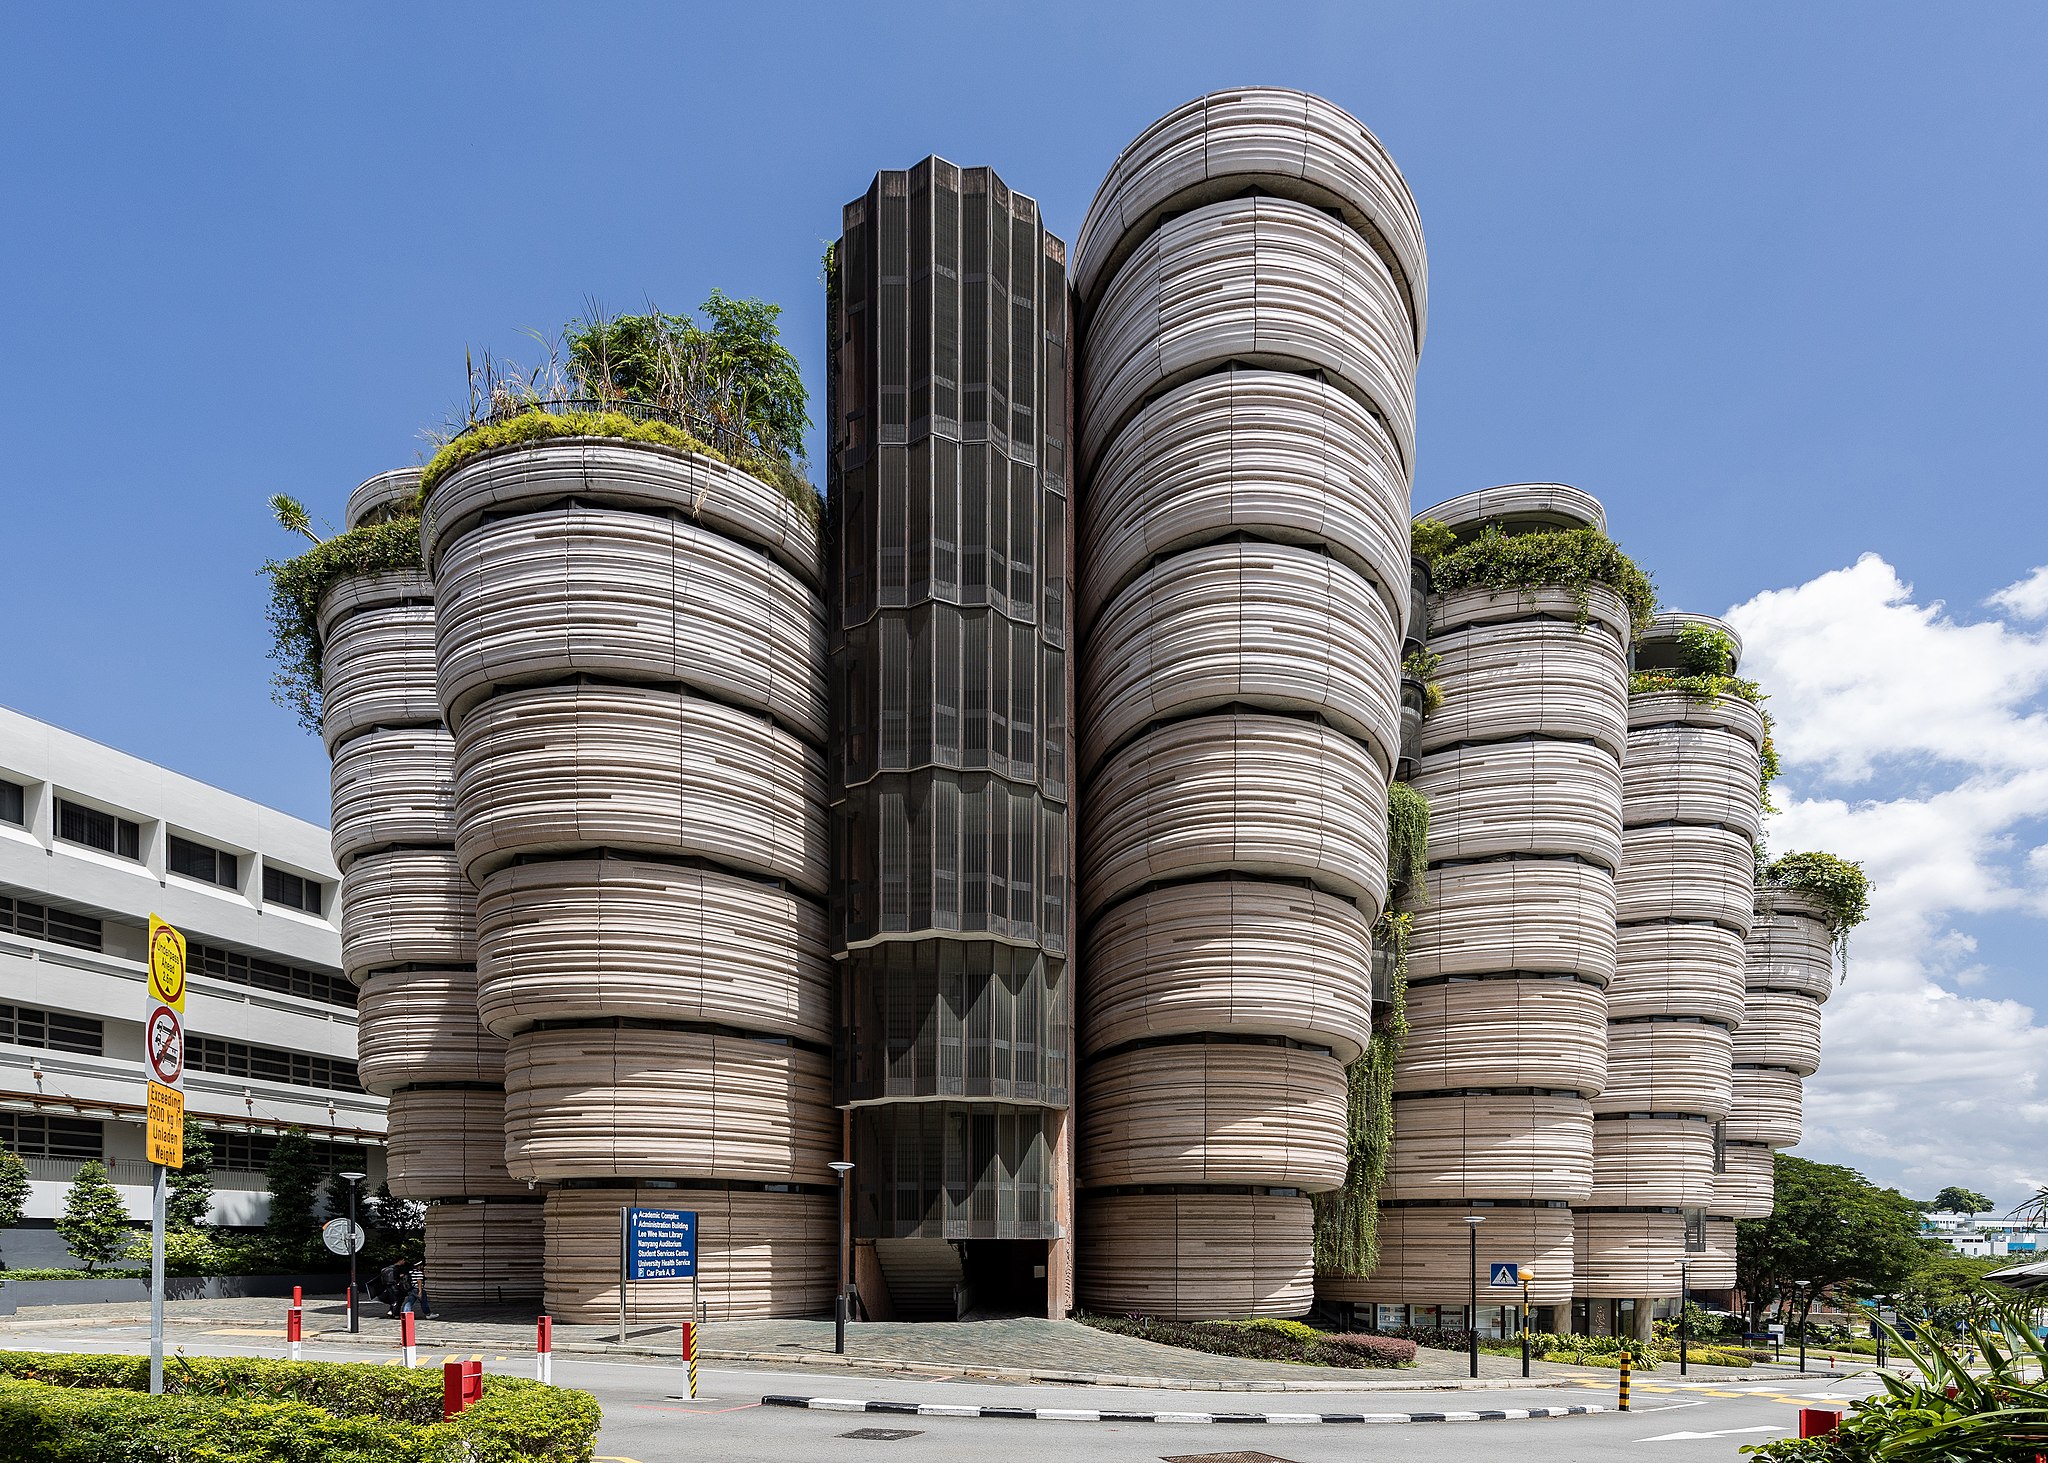 Budova známá jako Úl (The Hive), jedna z několika architektonických skvostů singapurské Technické university v Nanyangu (Nanyang Technological University, Singapore). Universita patří k světové špičce, její hlavní kampus se rozkládá na ploše 200 hekt